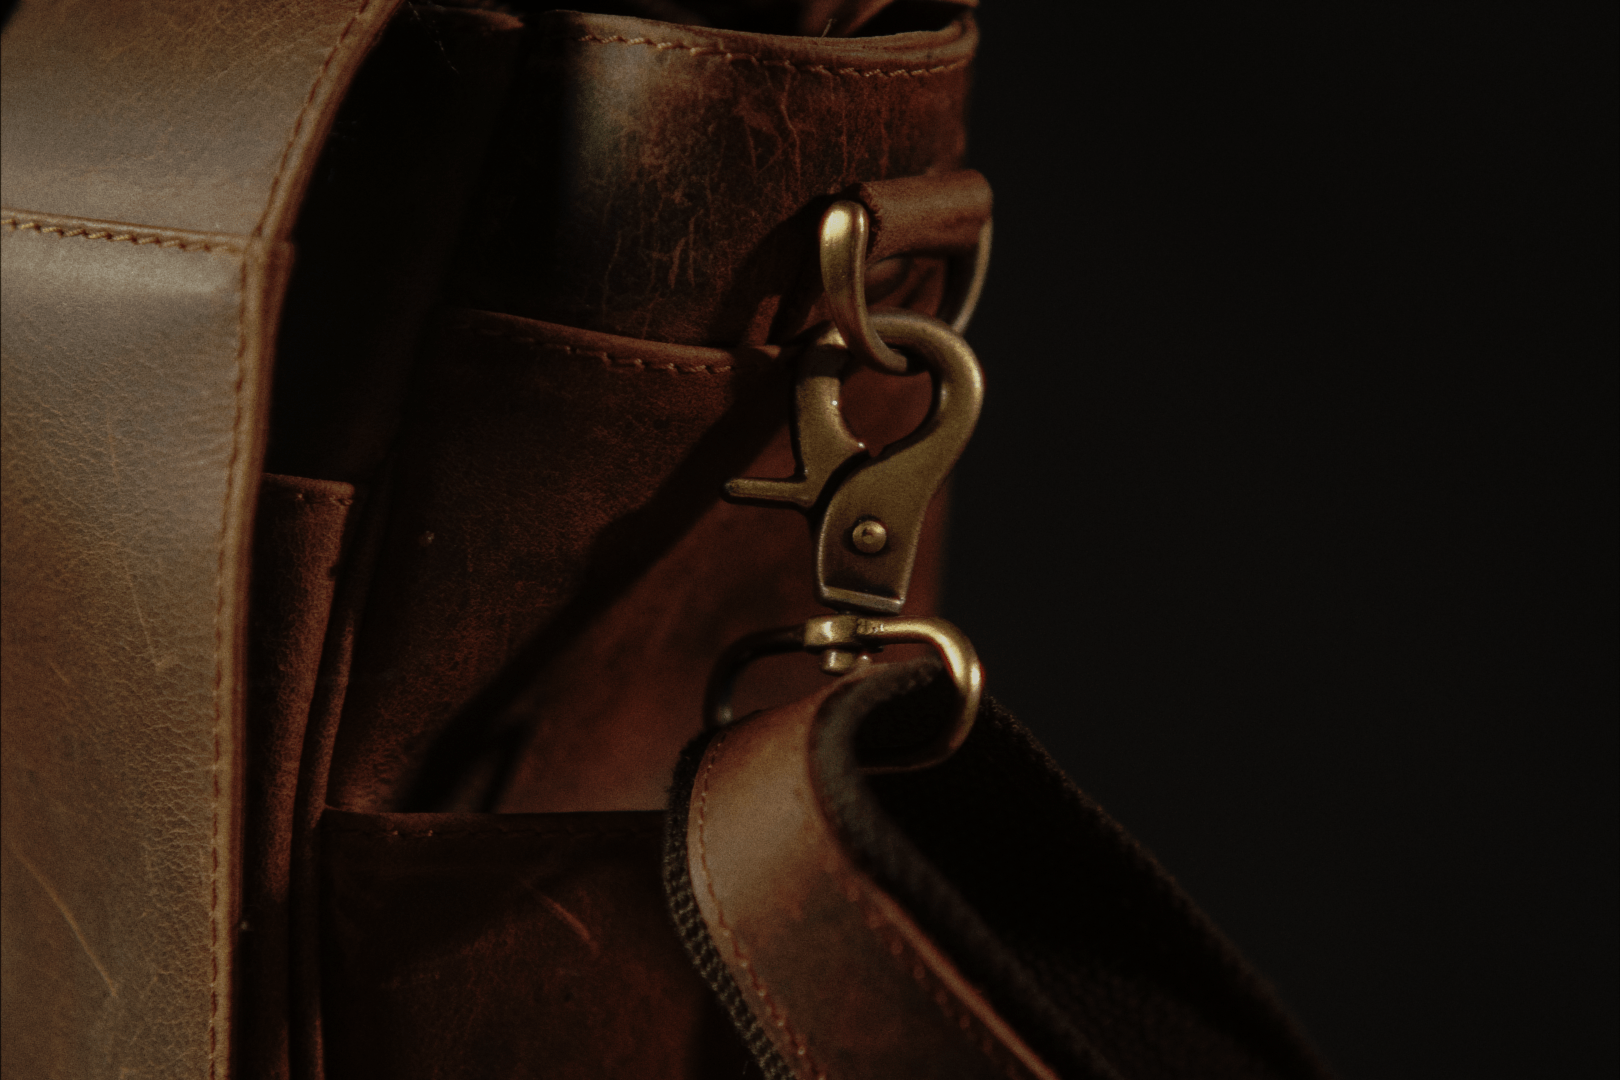  The “Lewis” Buffalo Leather Messenger Bag by Vintage Gentlemen Vintage Gentlemen Perfumarie